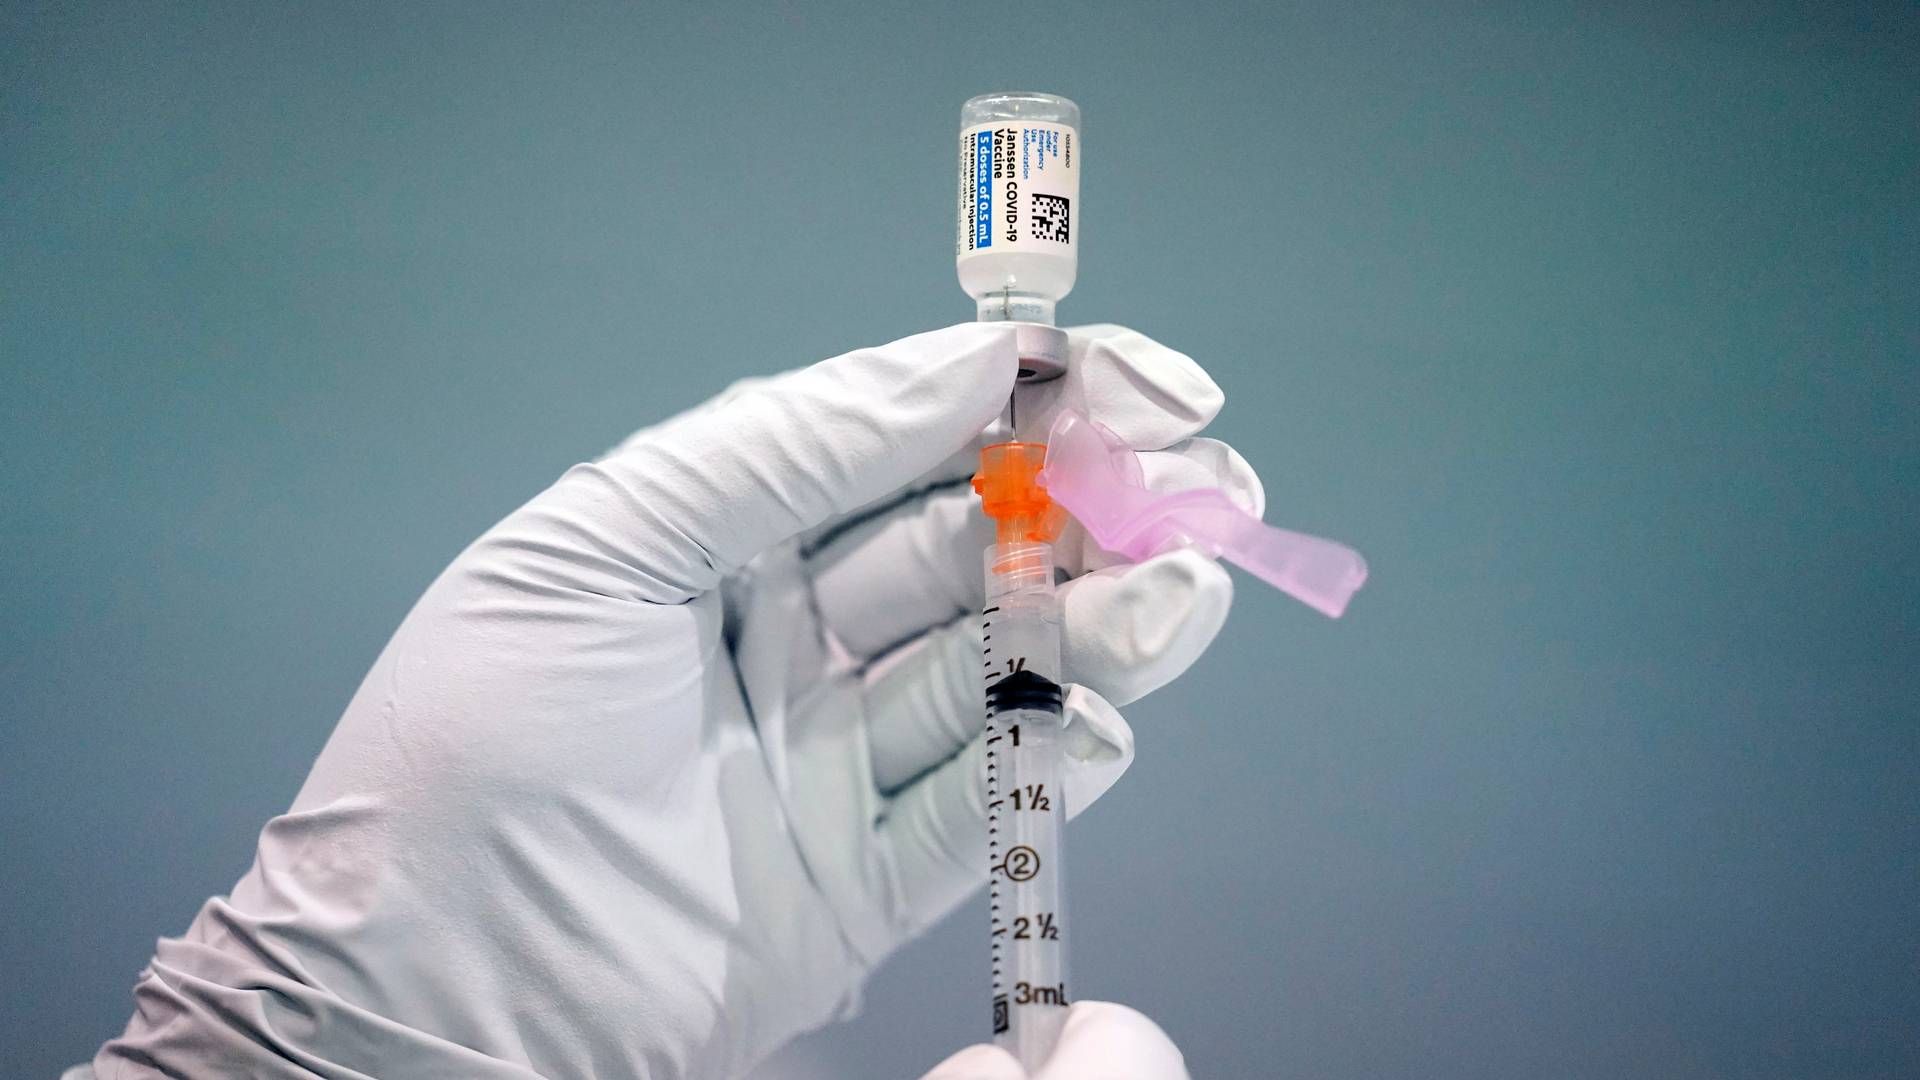 LOVTE GODT: Johnson & Johnson, som også har utviklet en koronavaksine (bildet), har tidligere meldt at RSV-vaksinen ga 80 prosents beskyttelse mot mot nedre luftveisinfeksjoner i en fase 2b-studie. Nå ser det ikke ut til at det blir noe av en slik RSV-vaksine. | Foto: AP Photo/Matt Rourke